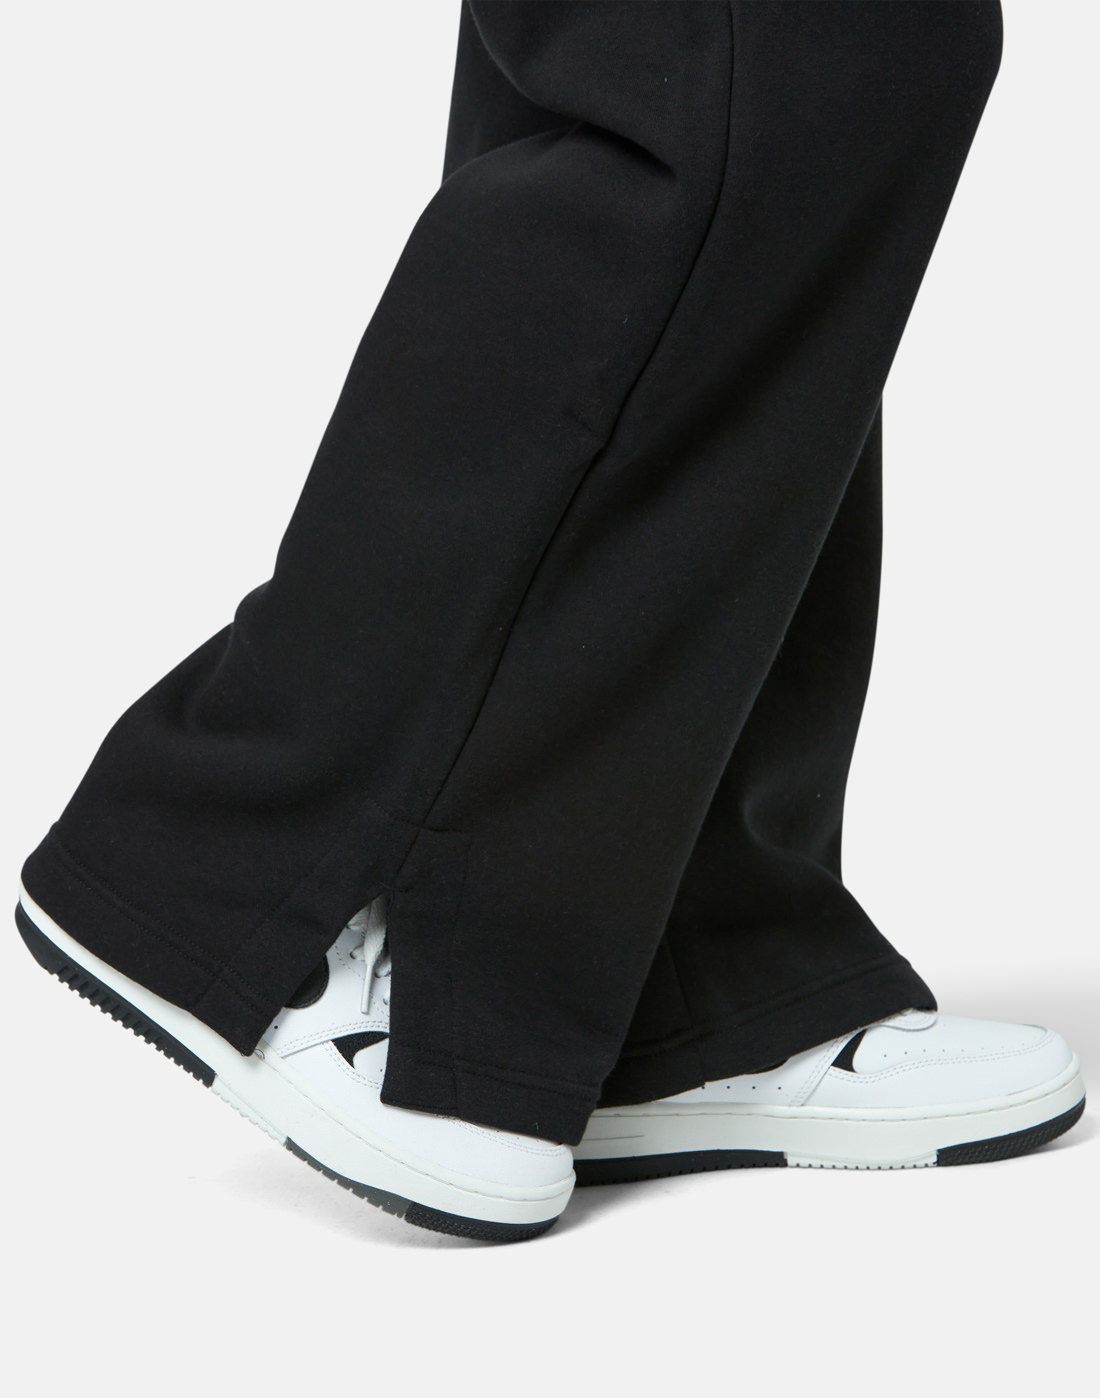 Nike Womens Phoenix Fleece Wide Leg Pants - Black | Life Style Sports IE